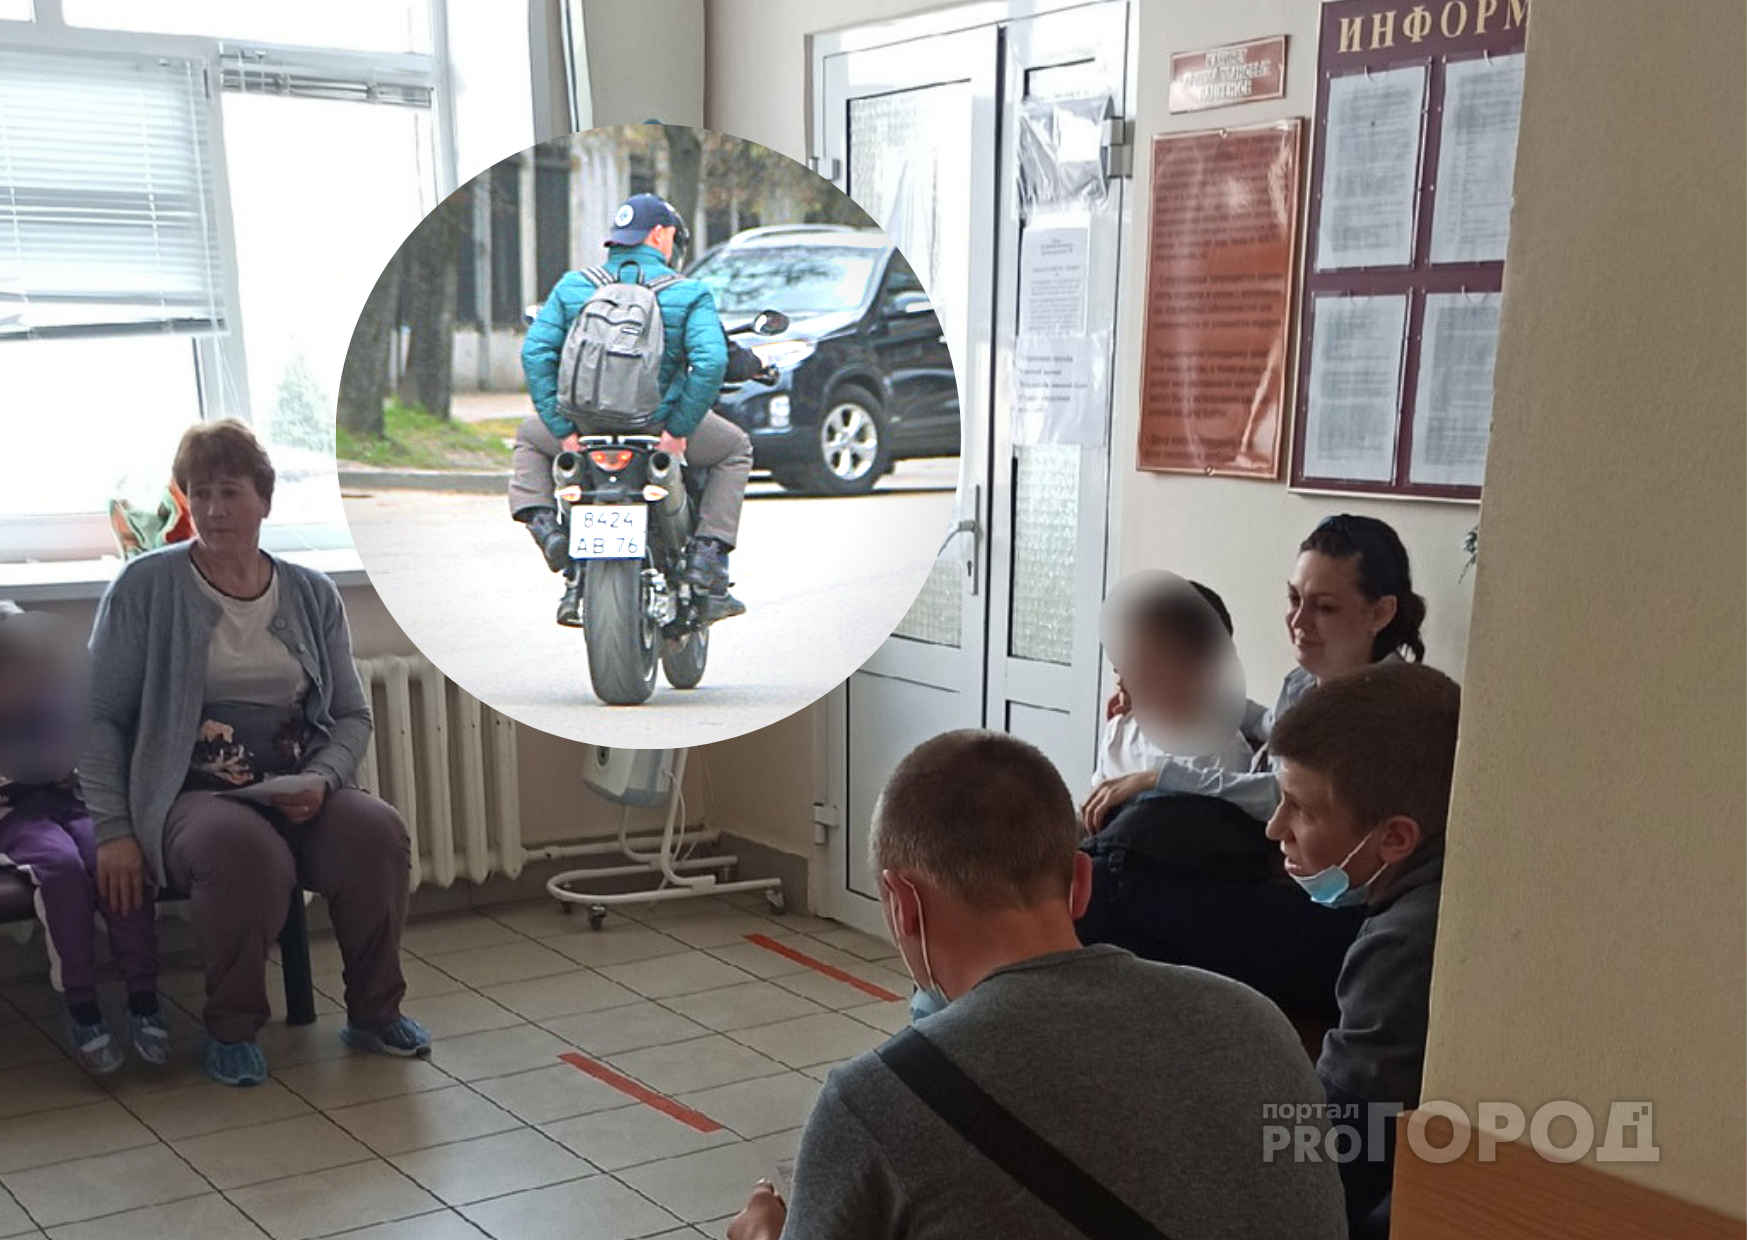 За жизнь мальчика борются врачи: в Ярославле мотоциклист сбил ребенка